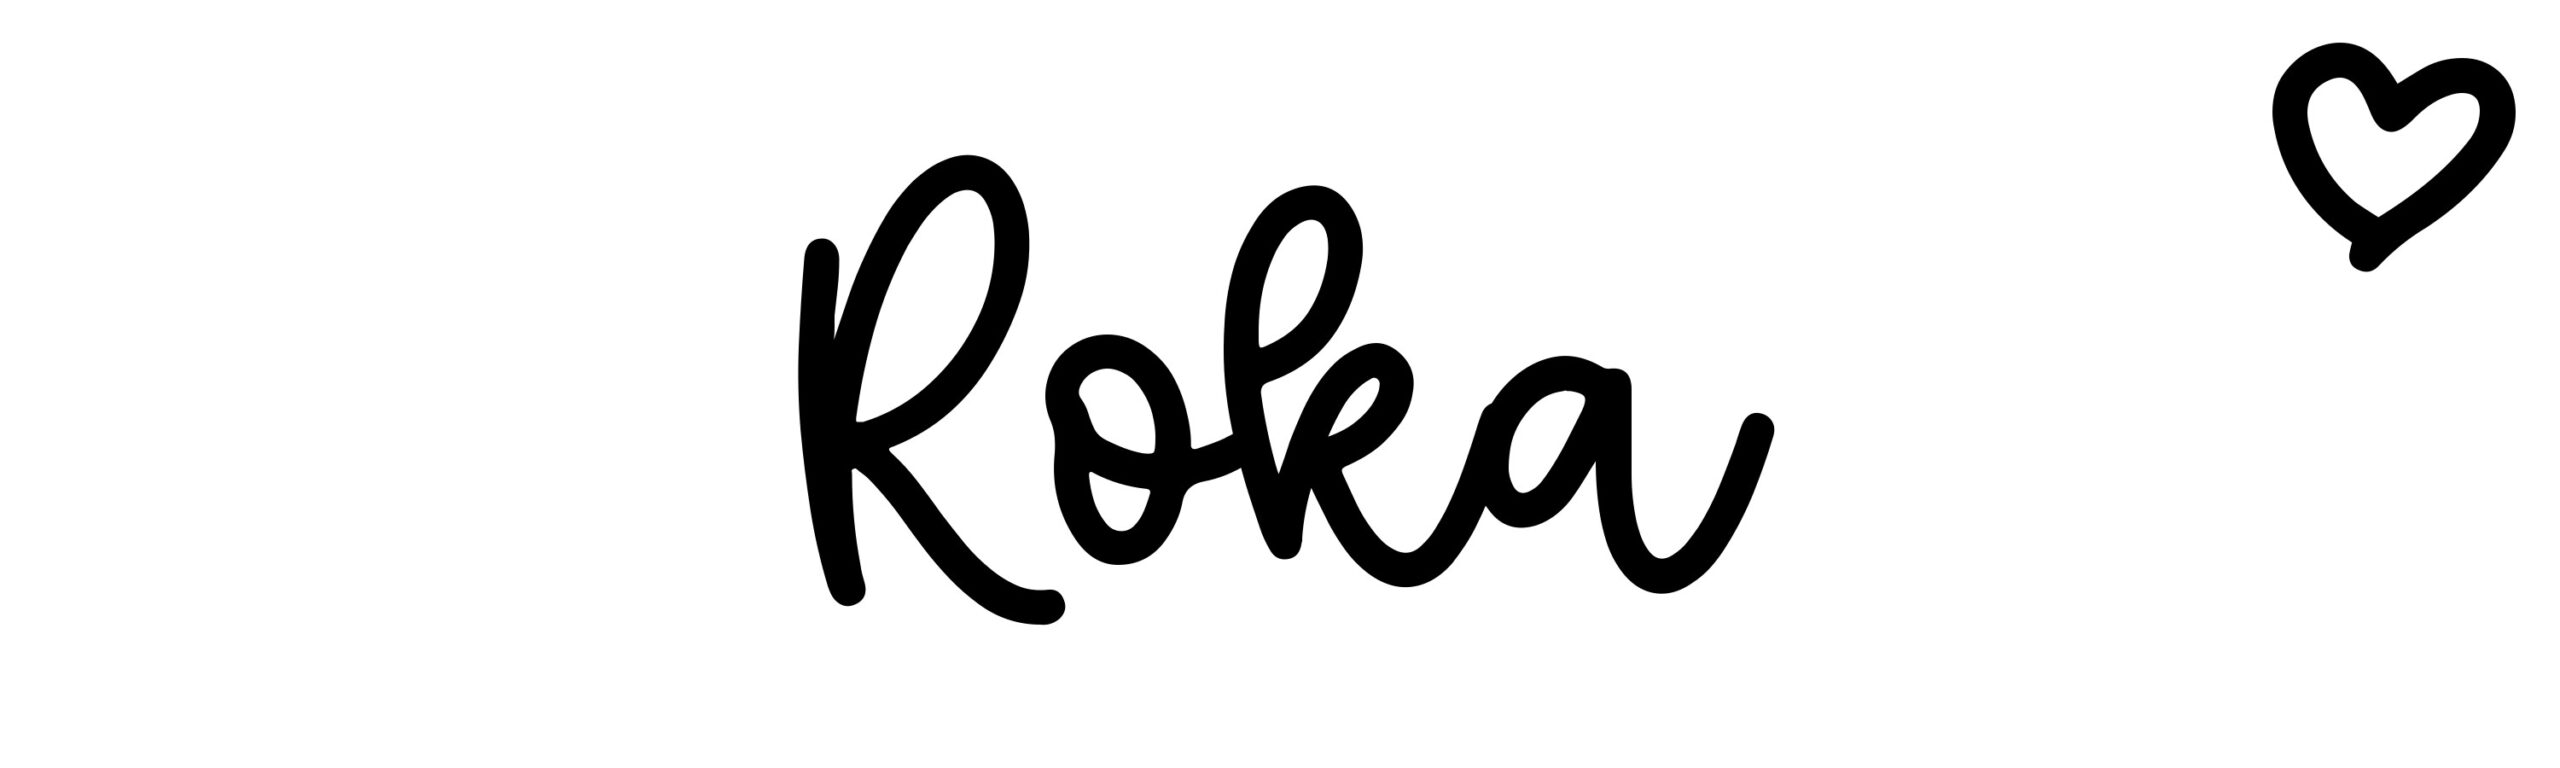 roki name meaning